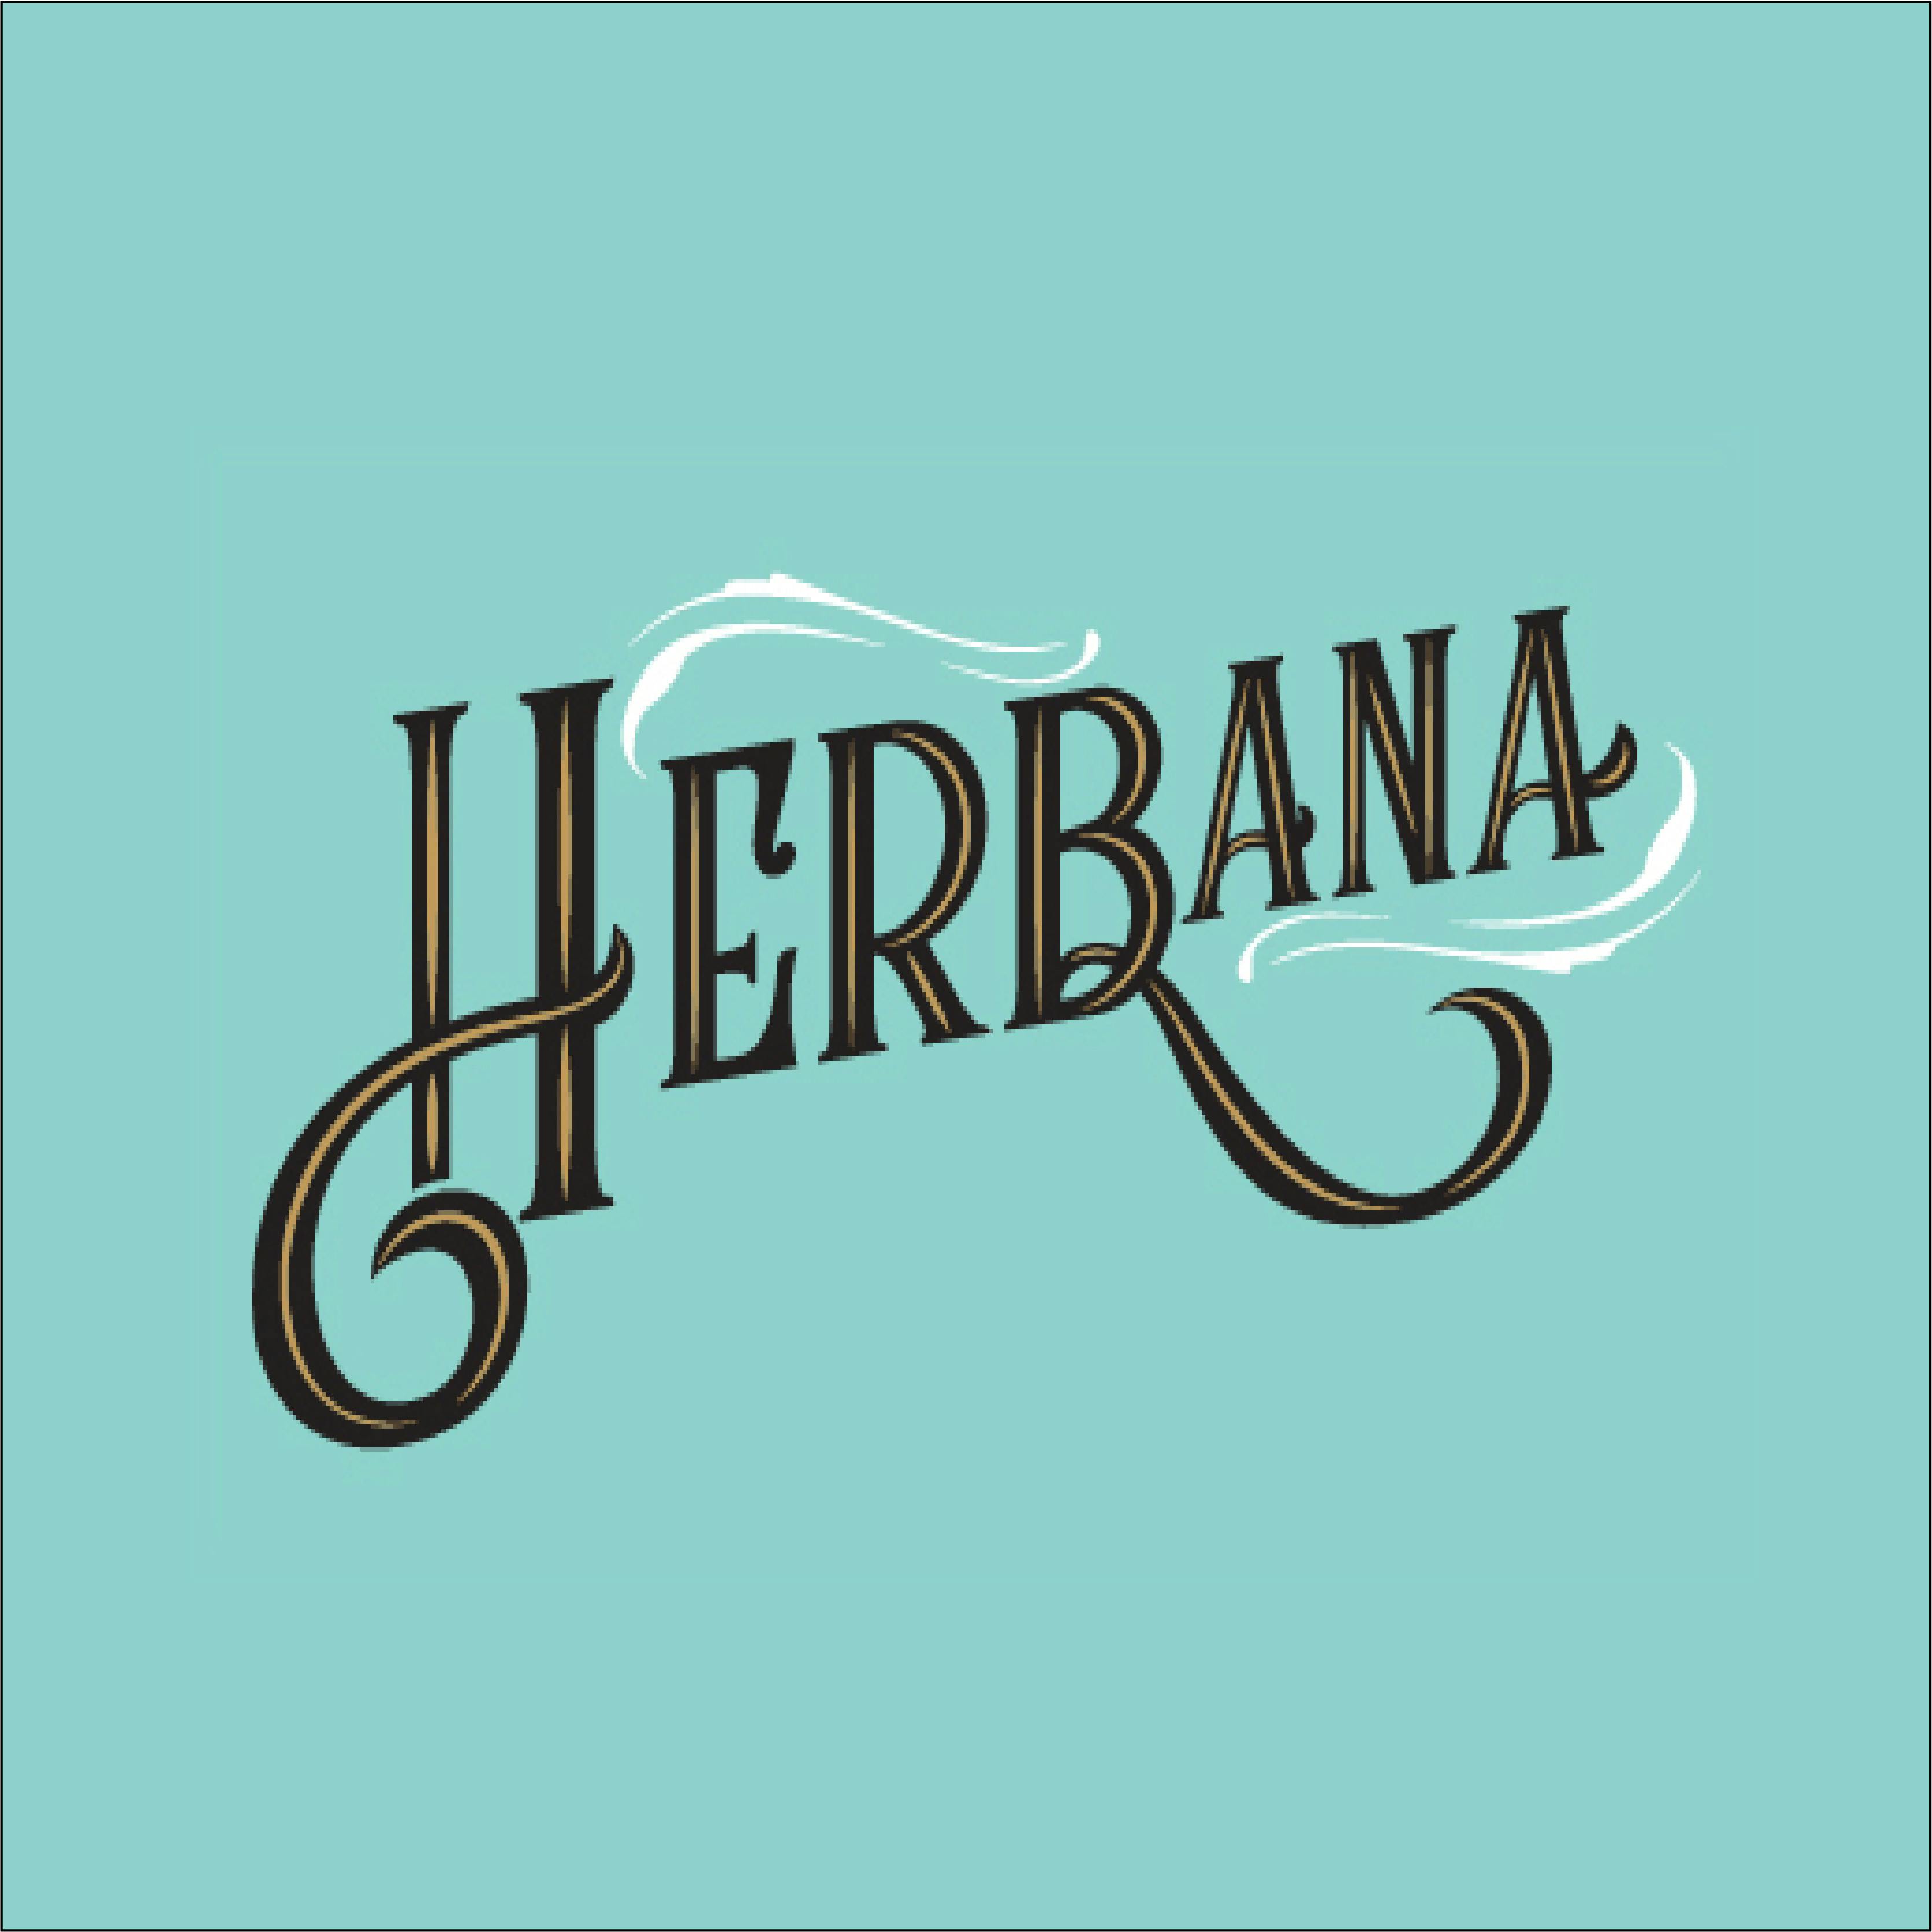 Herbana-logo